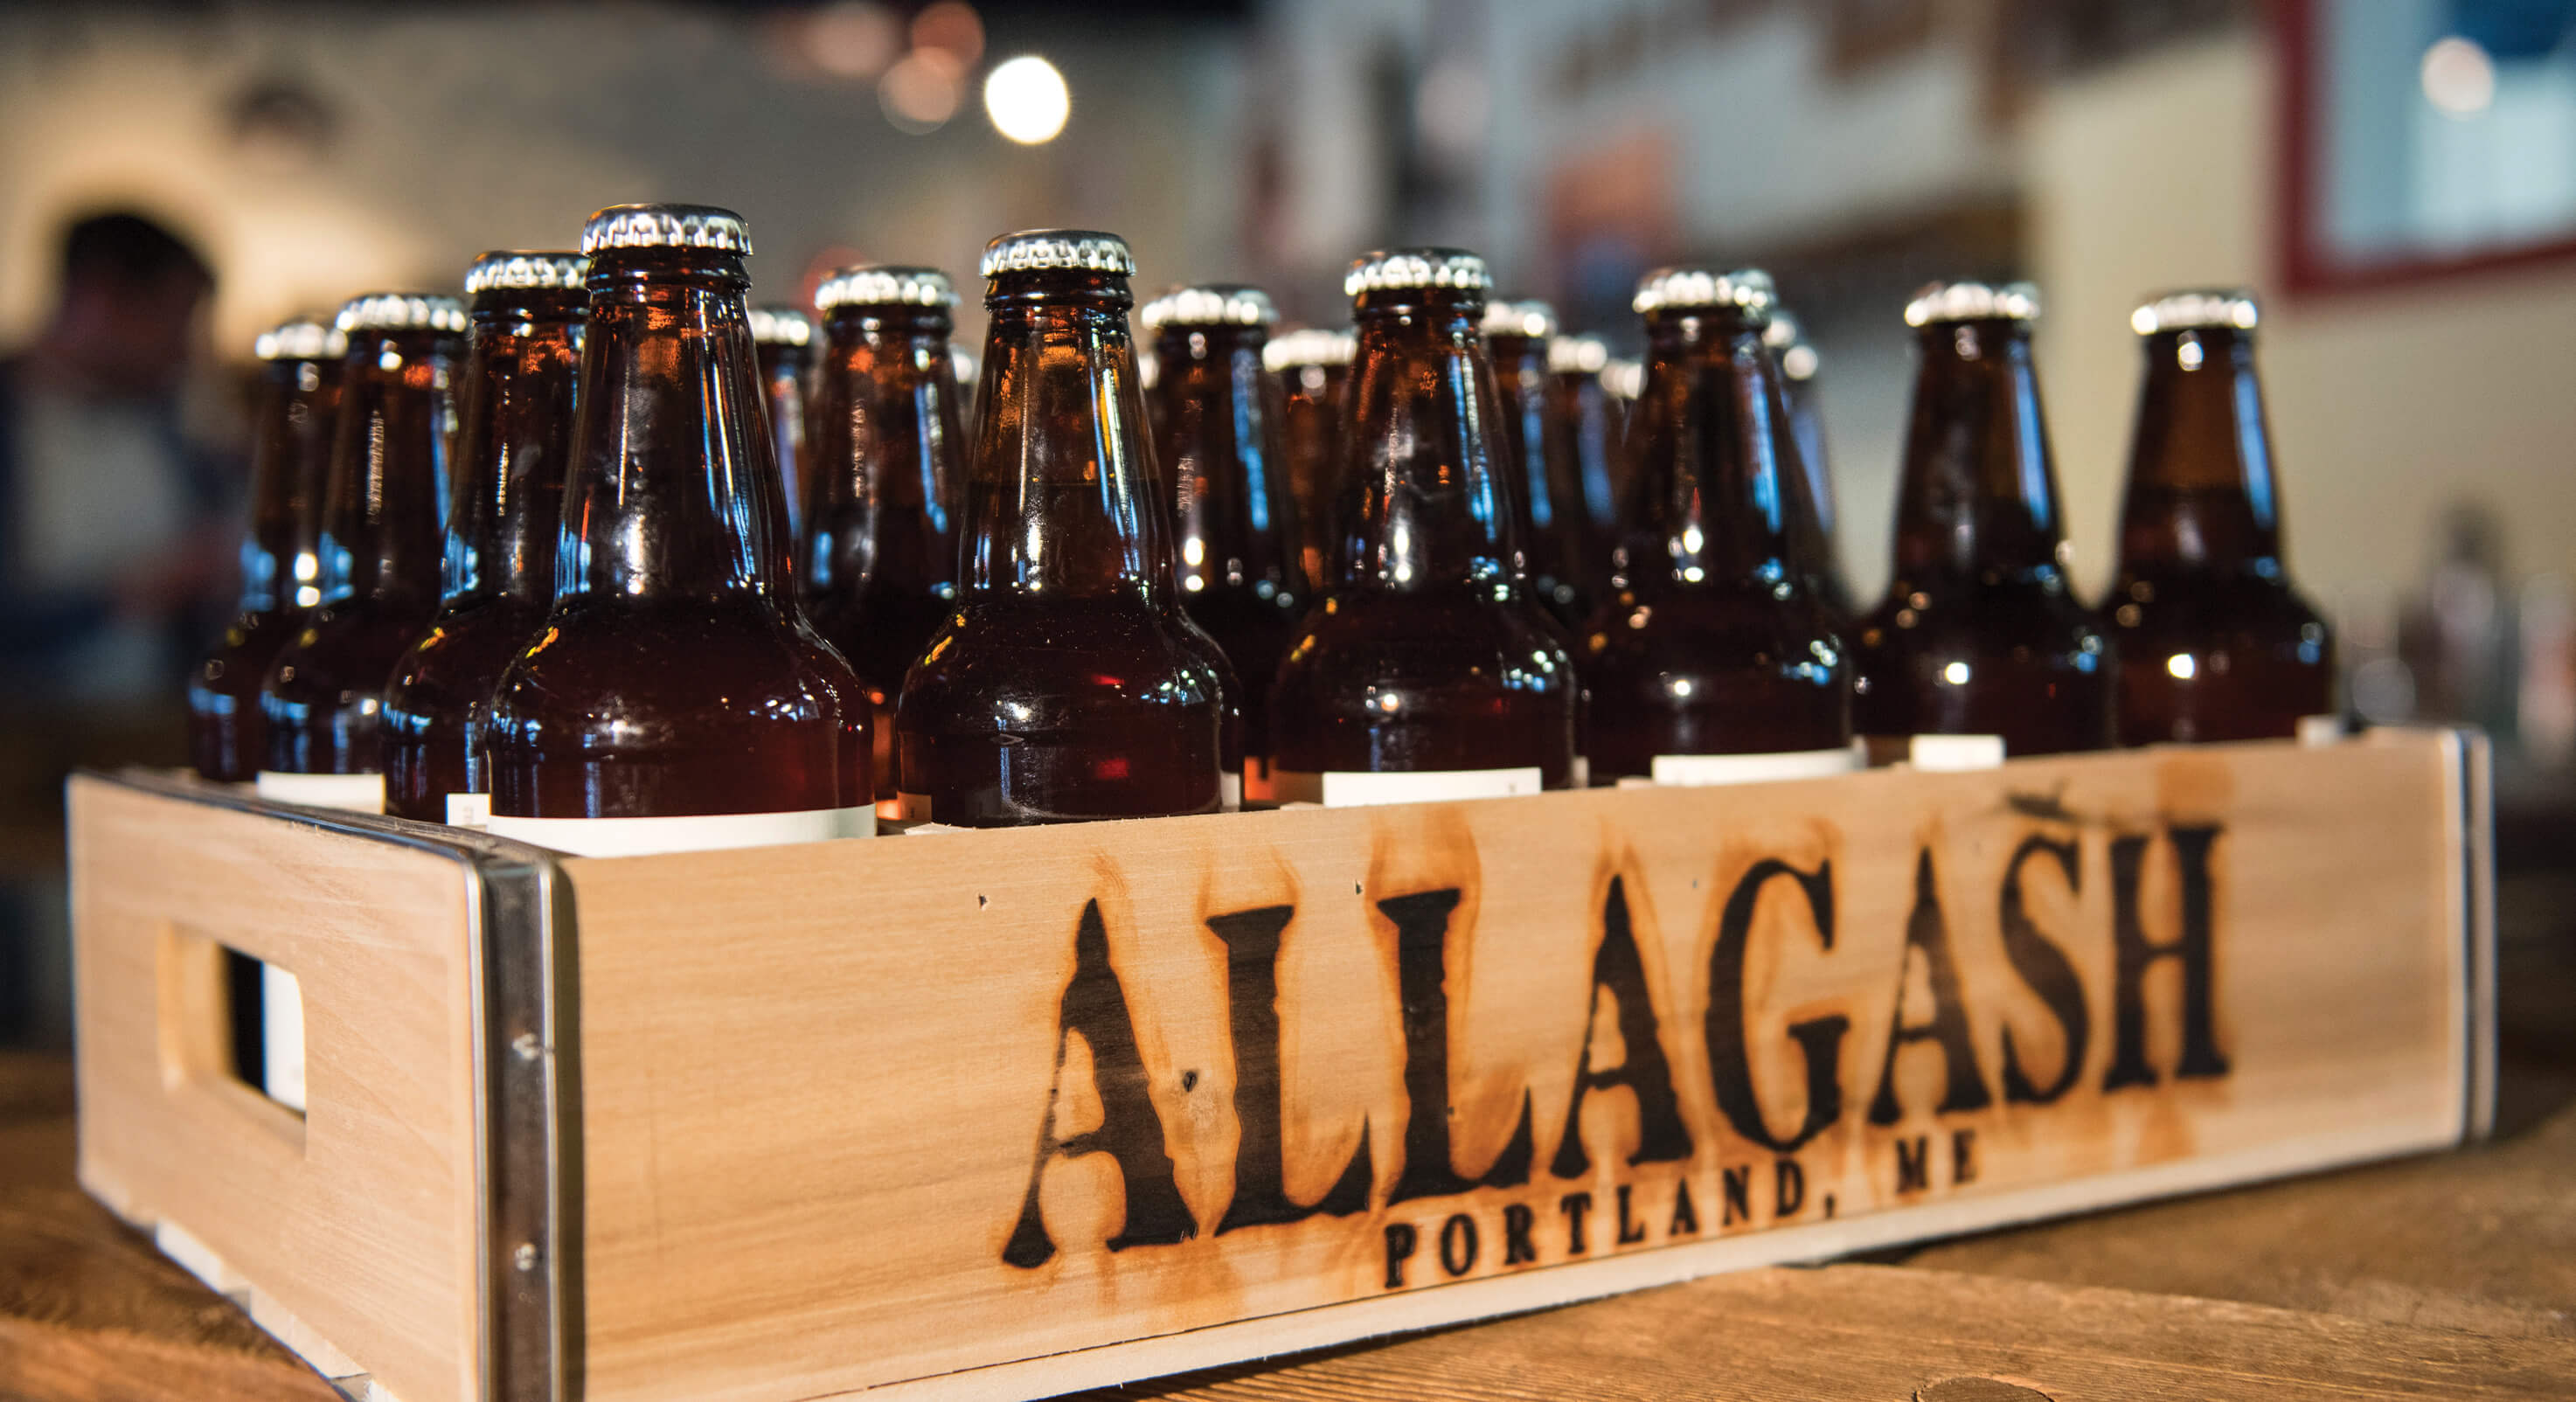 Allagash-beer-bottles-1-1-1-1